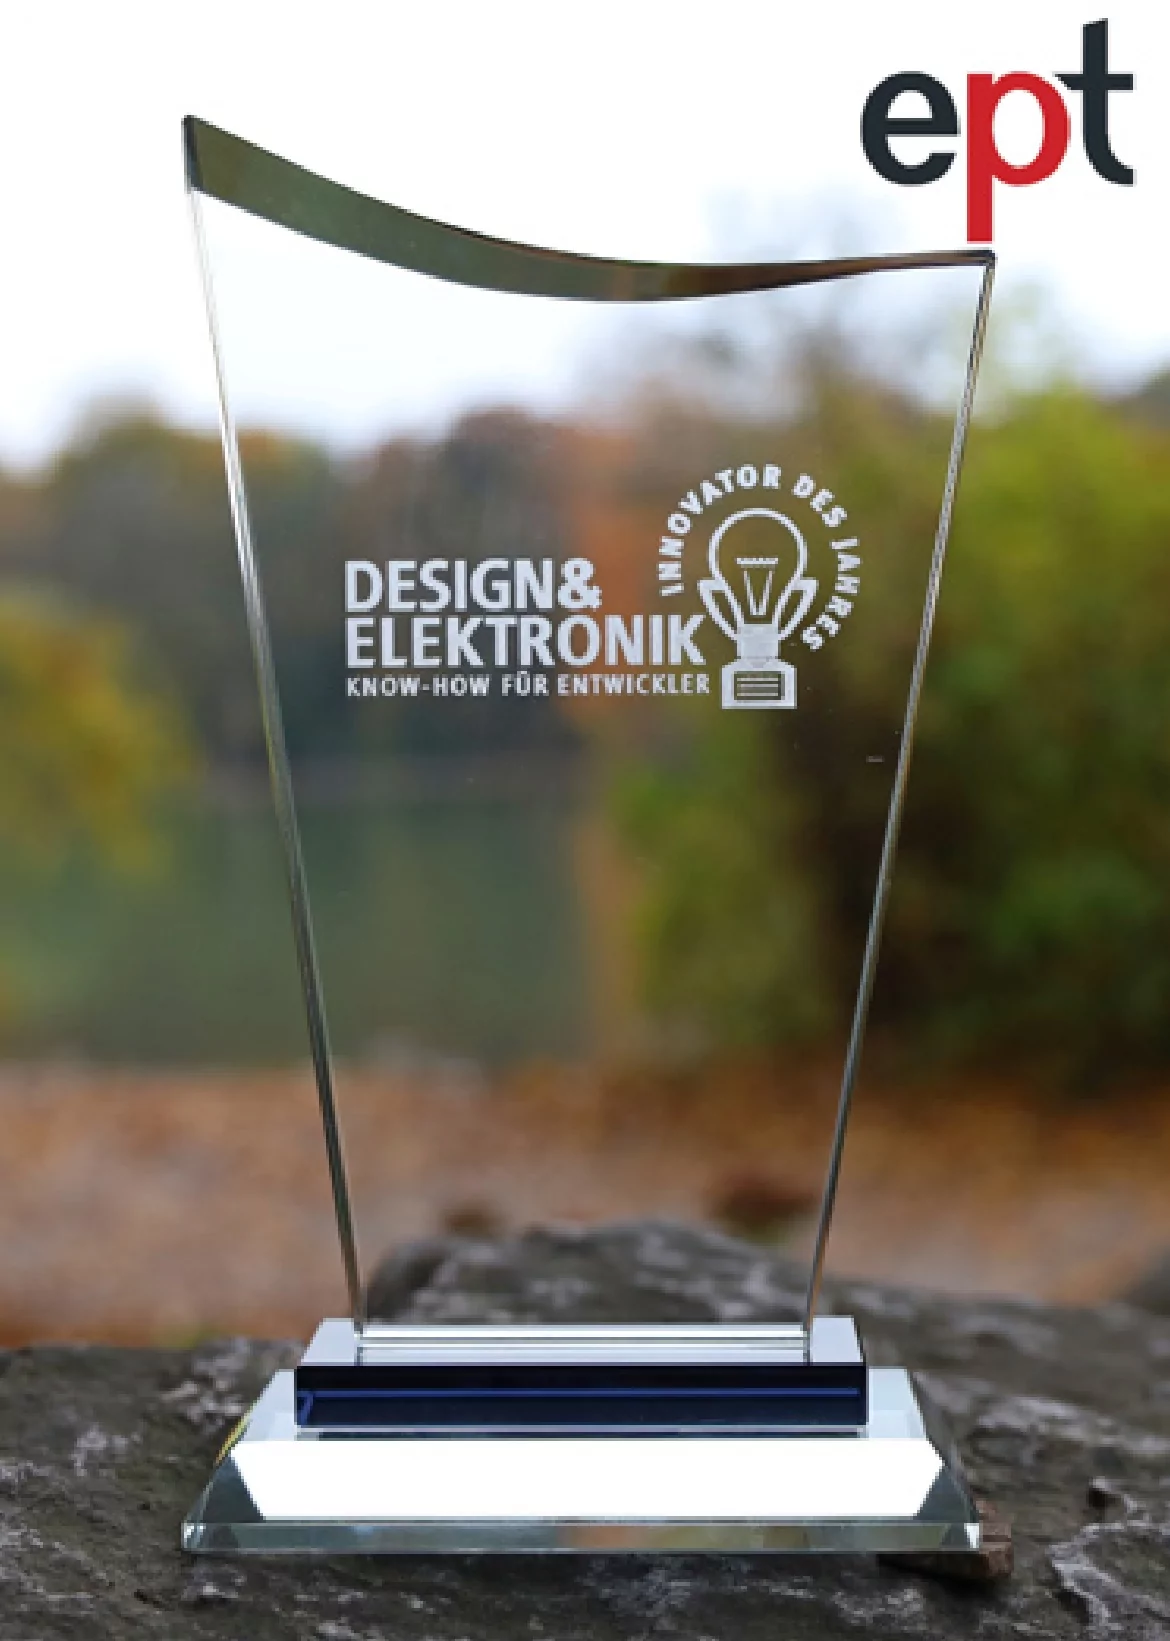 Firma Ept Connectors, której Semicon jest dedykowanym dystrybutorem w Polsce, zdobywa nagrodę „Innowator roku” - statuetka